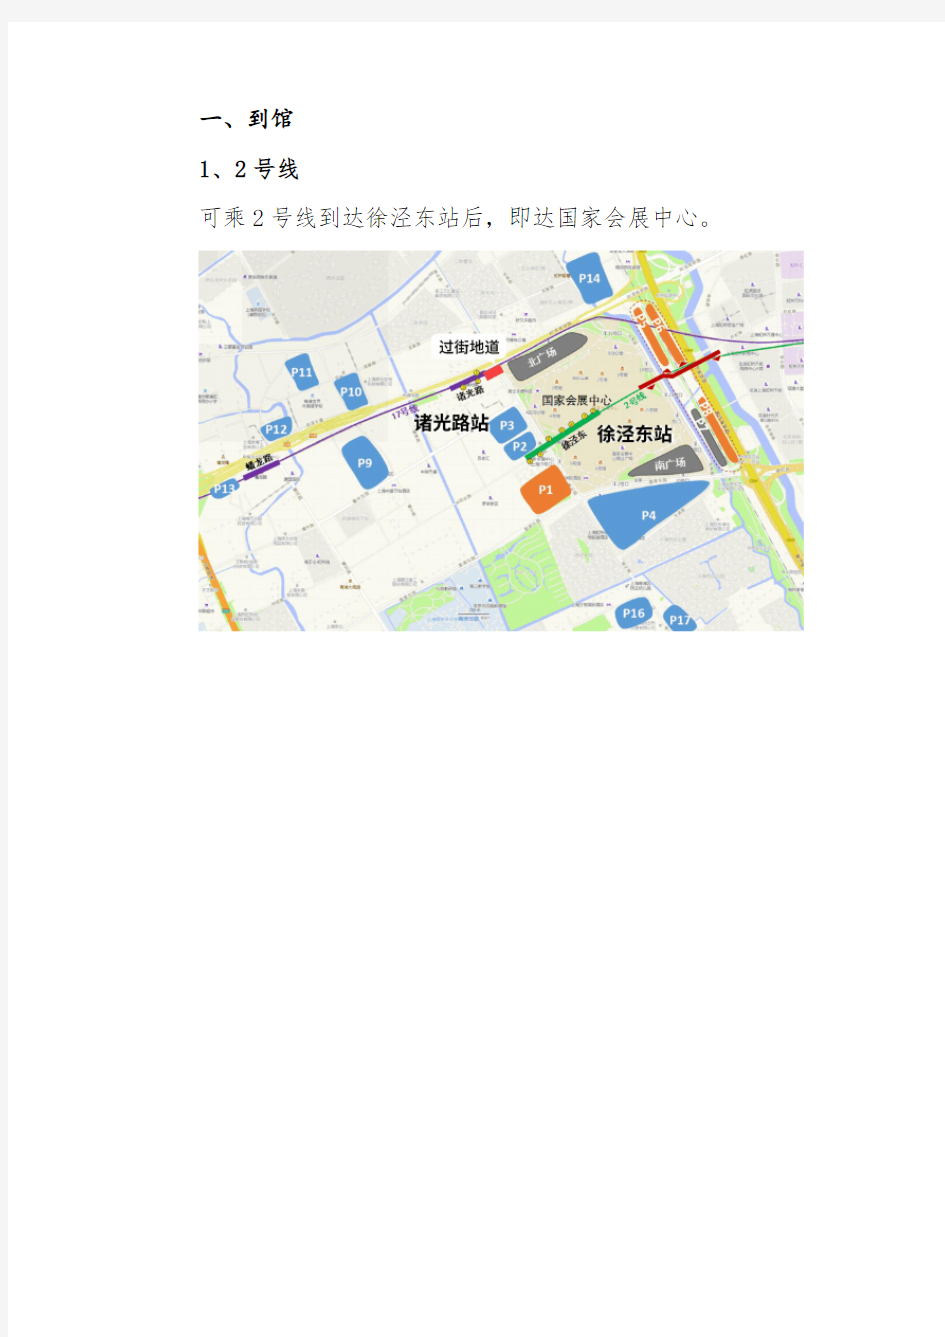 上海国家会展中心交通出行攻略